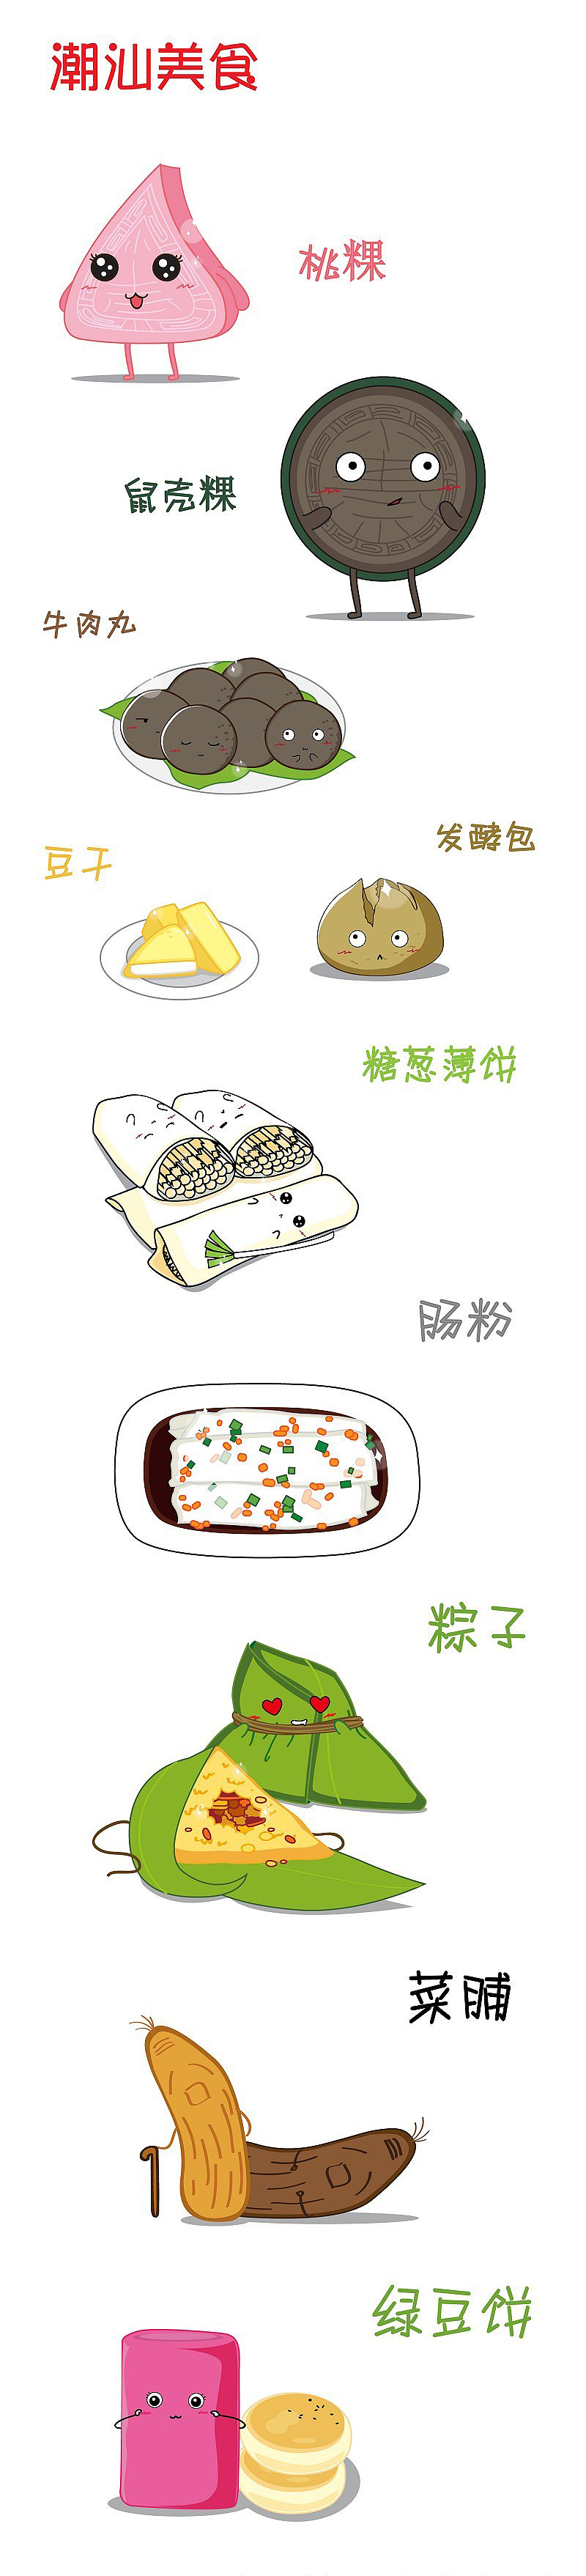 潮汕美食画画图片